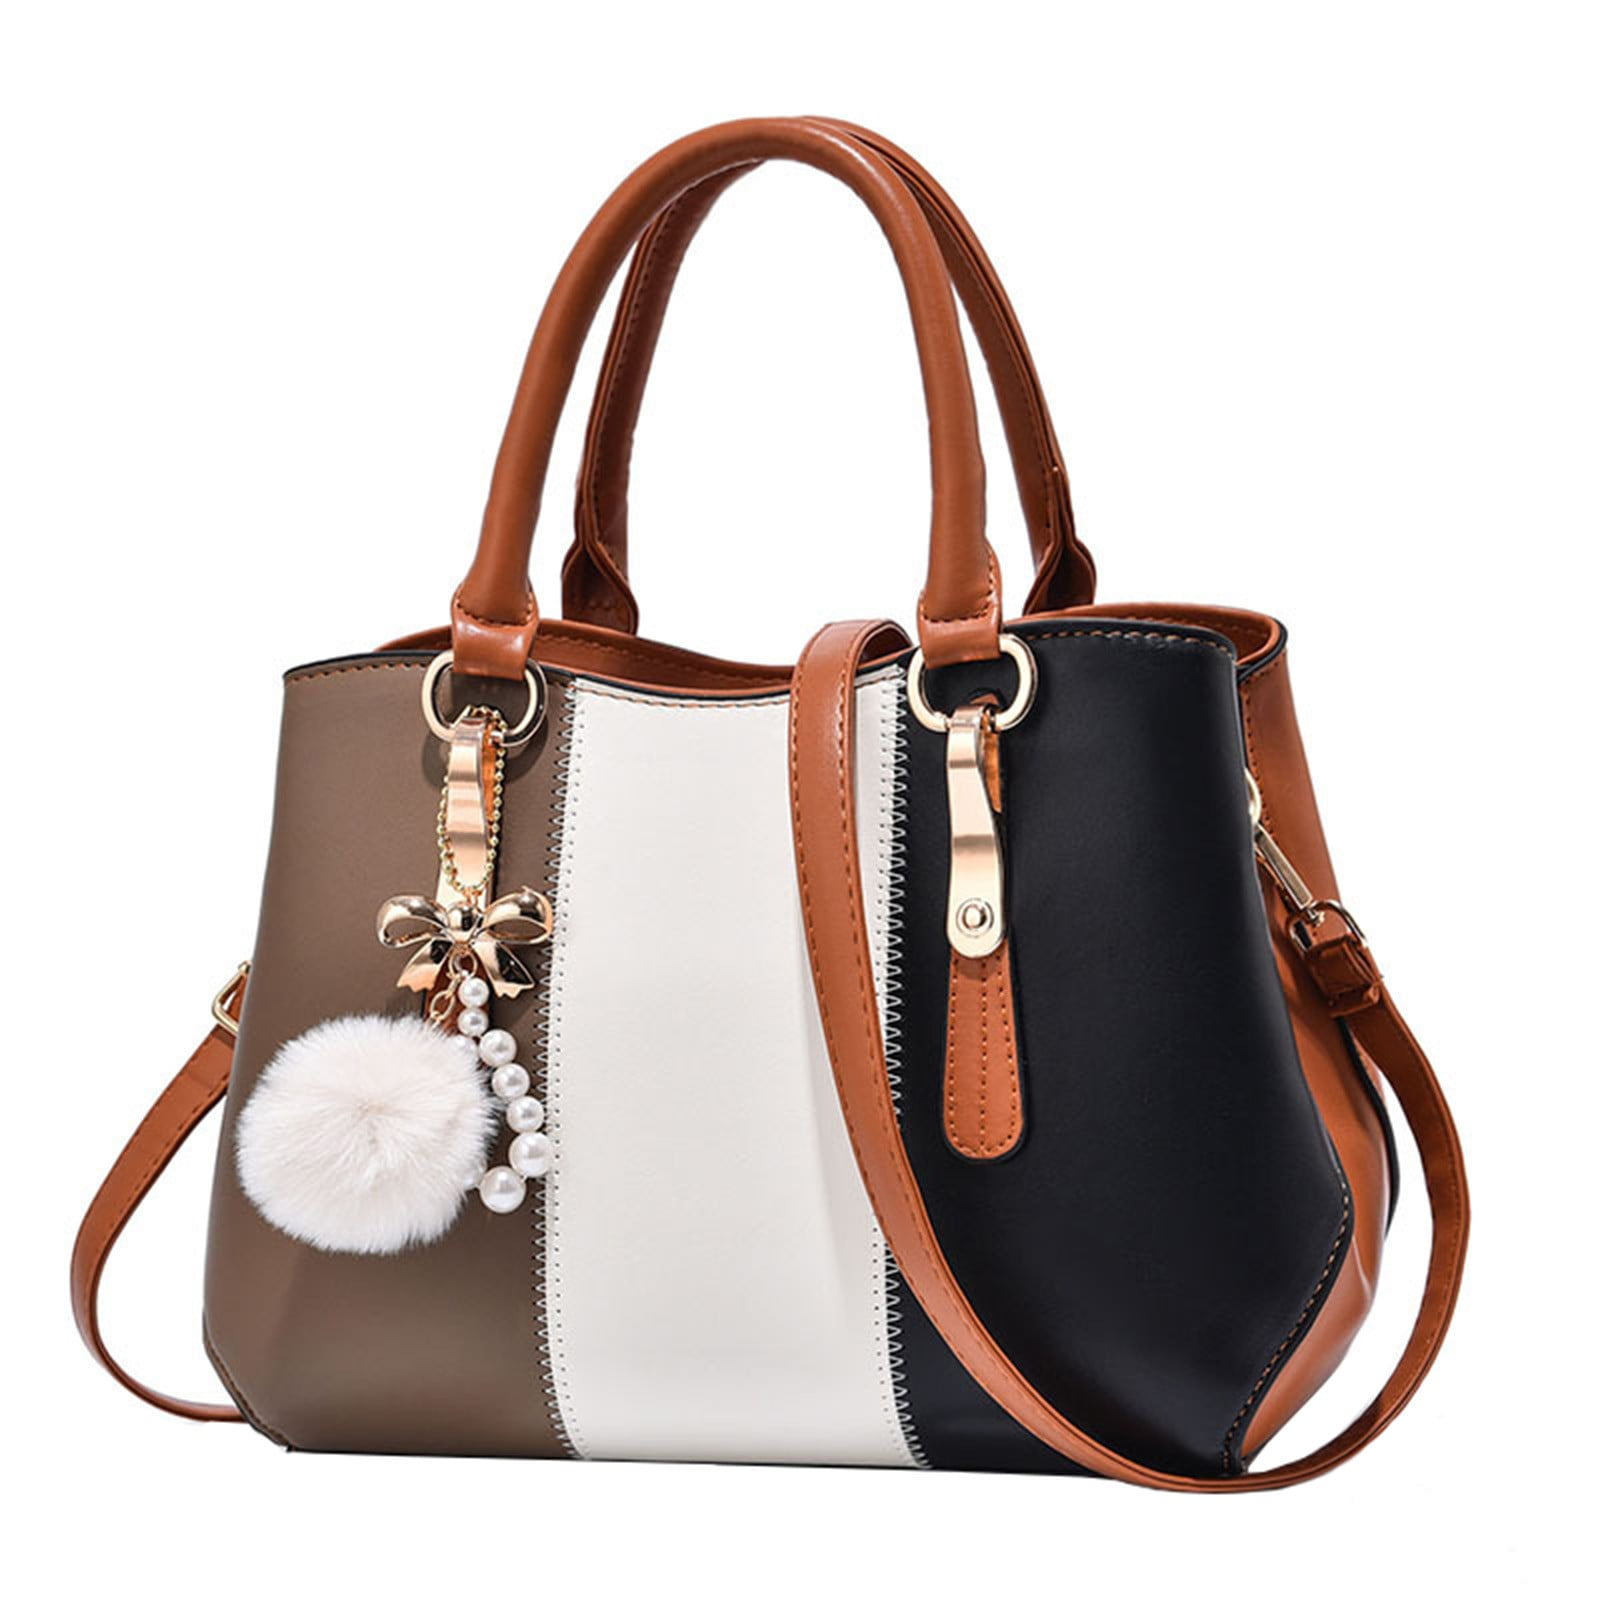 Cheap LC Elegant Fashion Ladies Handbags Women Shoulder Bag Tote